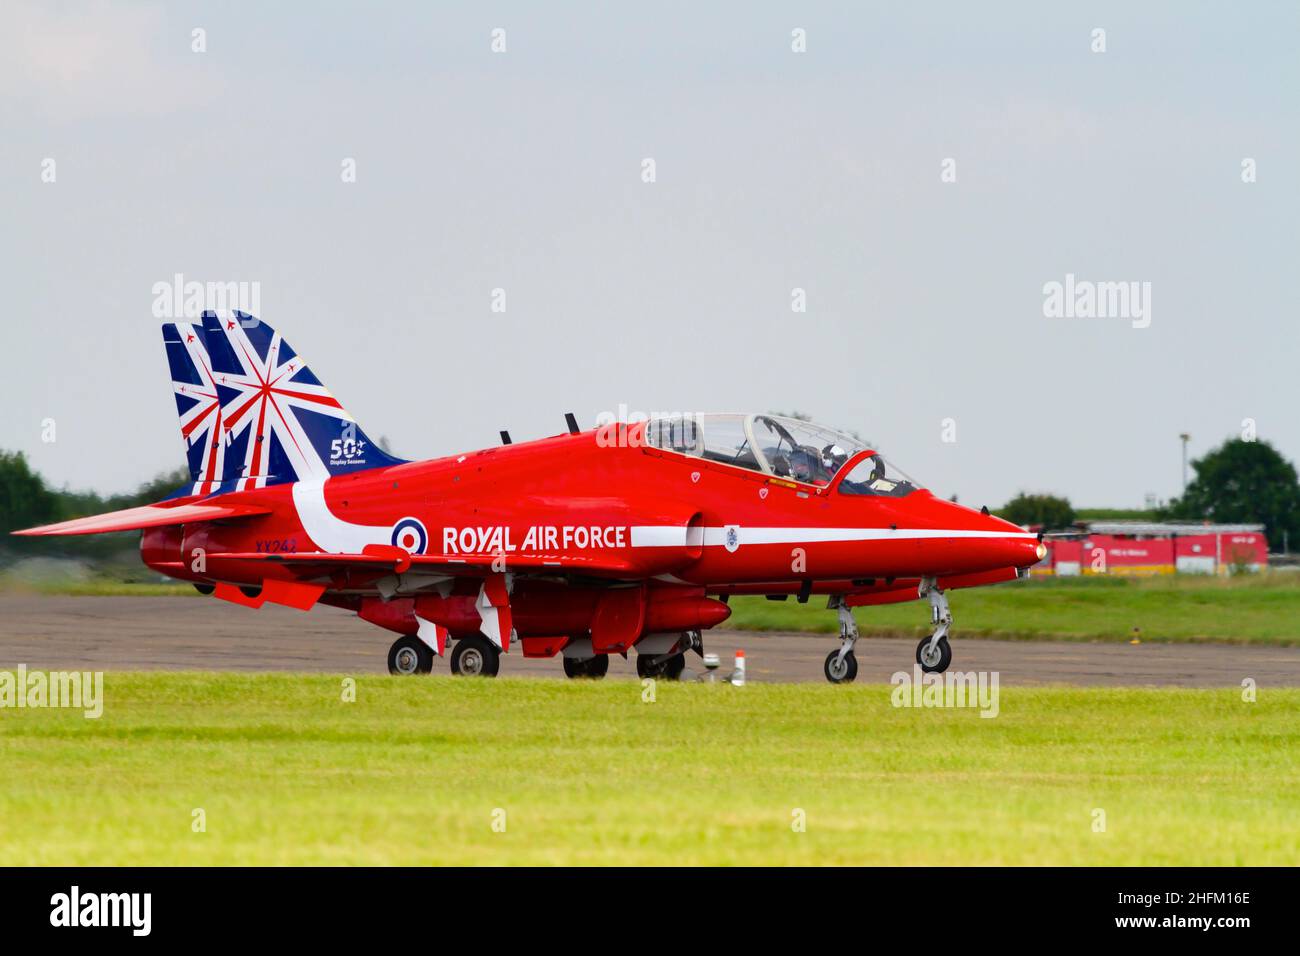 Deux avions BAE Hawk T1a de l'équipe d'exposition acrobatique de la Royal Air Force, les flèches rouges, avec les 50th marques de queue d'anniversaire.Accélération de la prise Banque D'Images